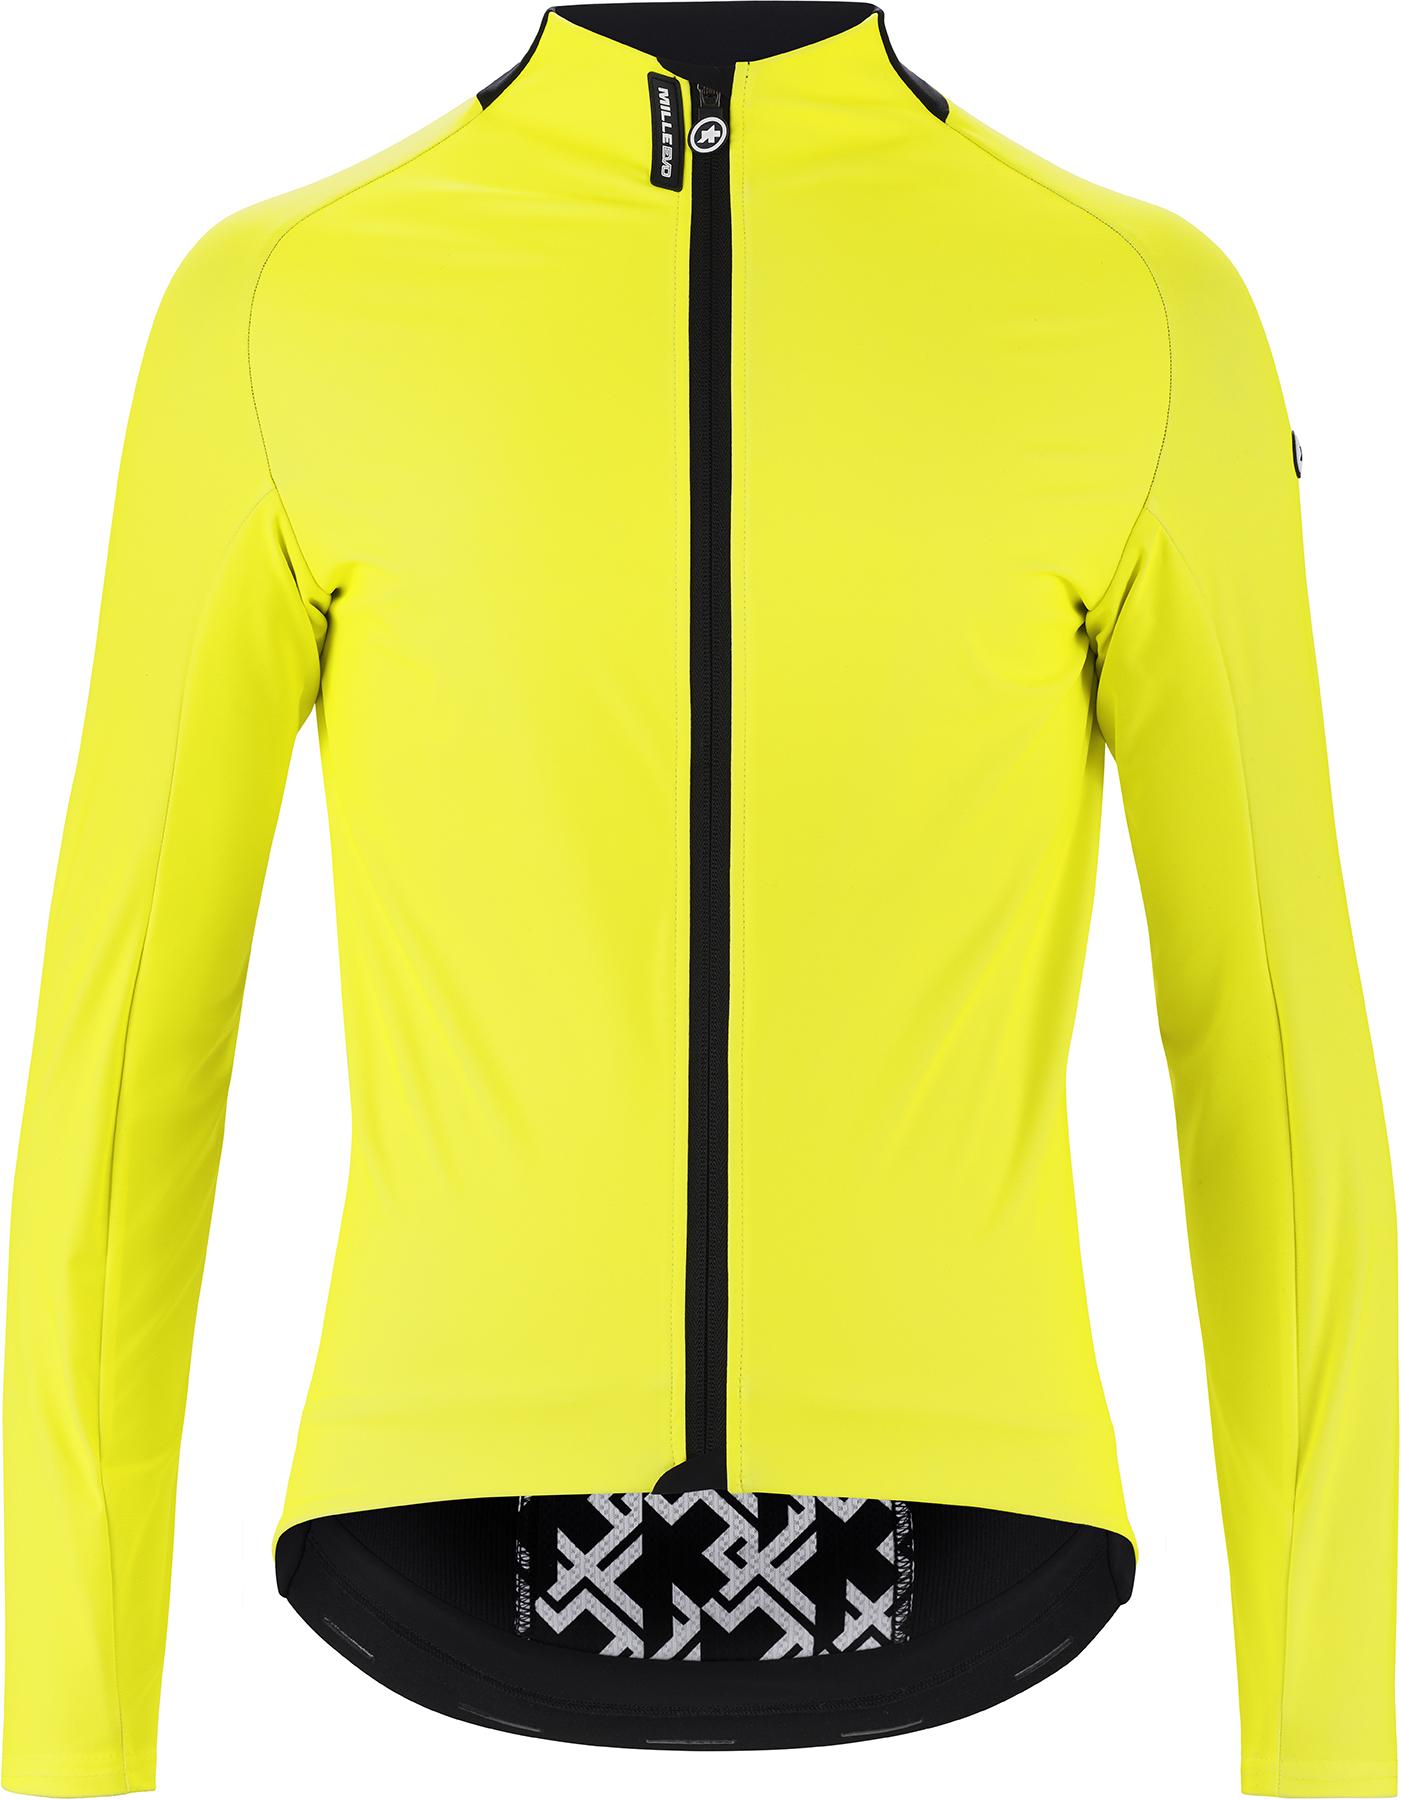 Assos Mille Gt Ultraz Winter Jacket Evo - Fluorescent Yellow